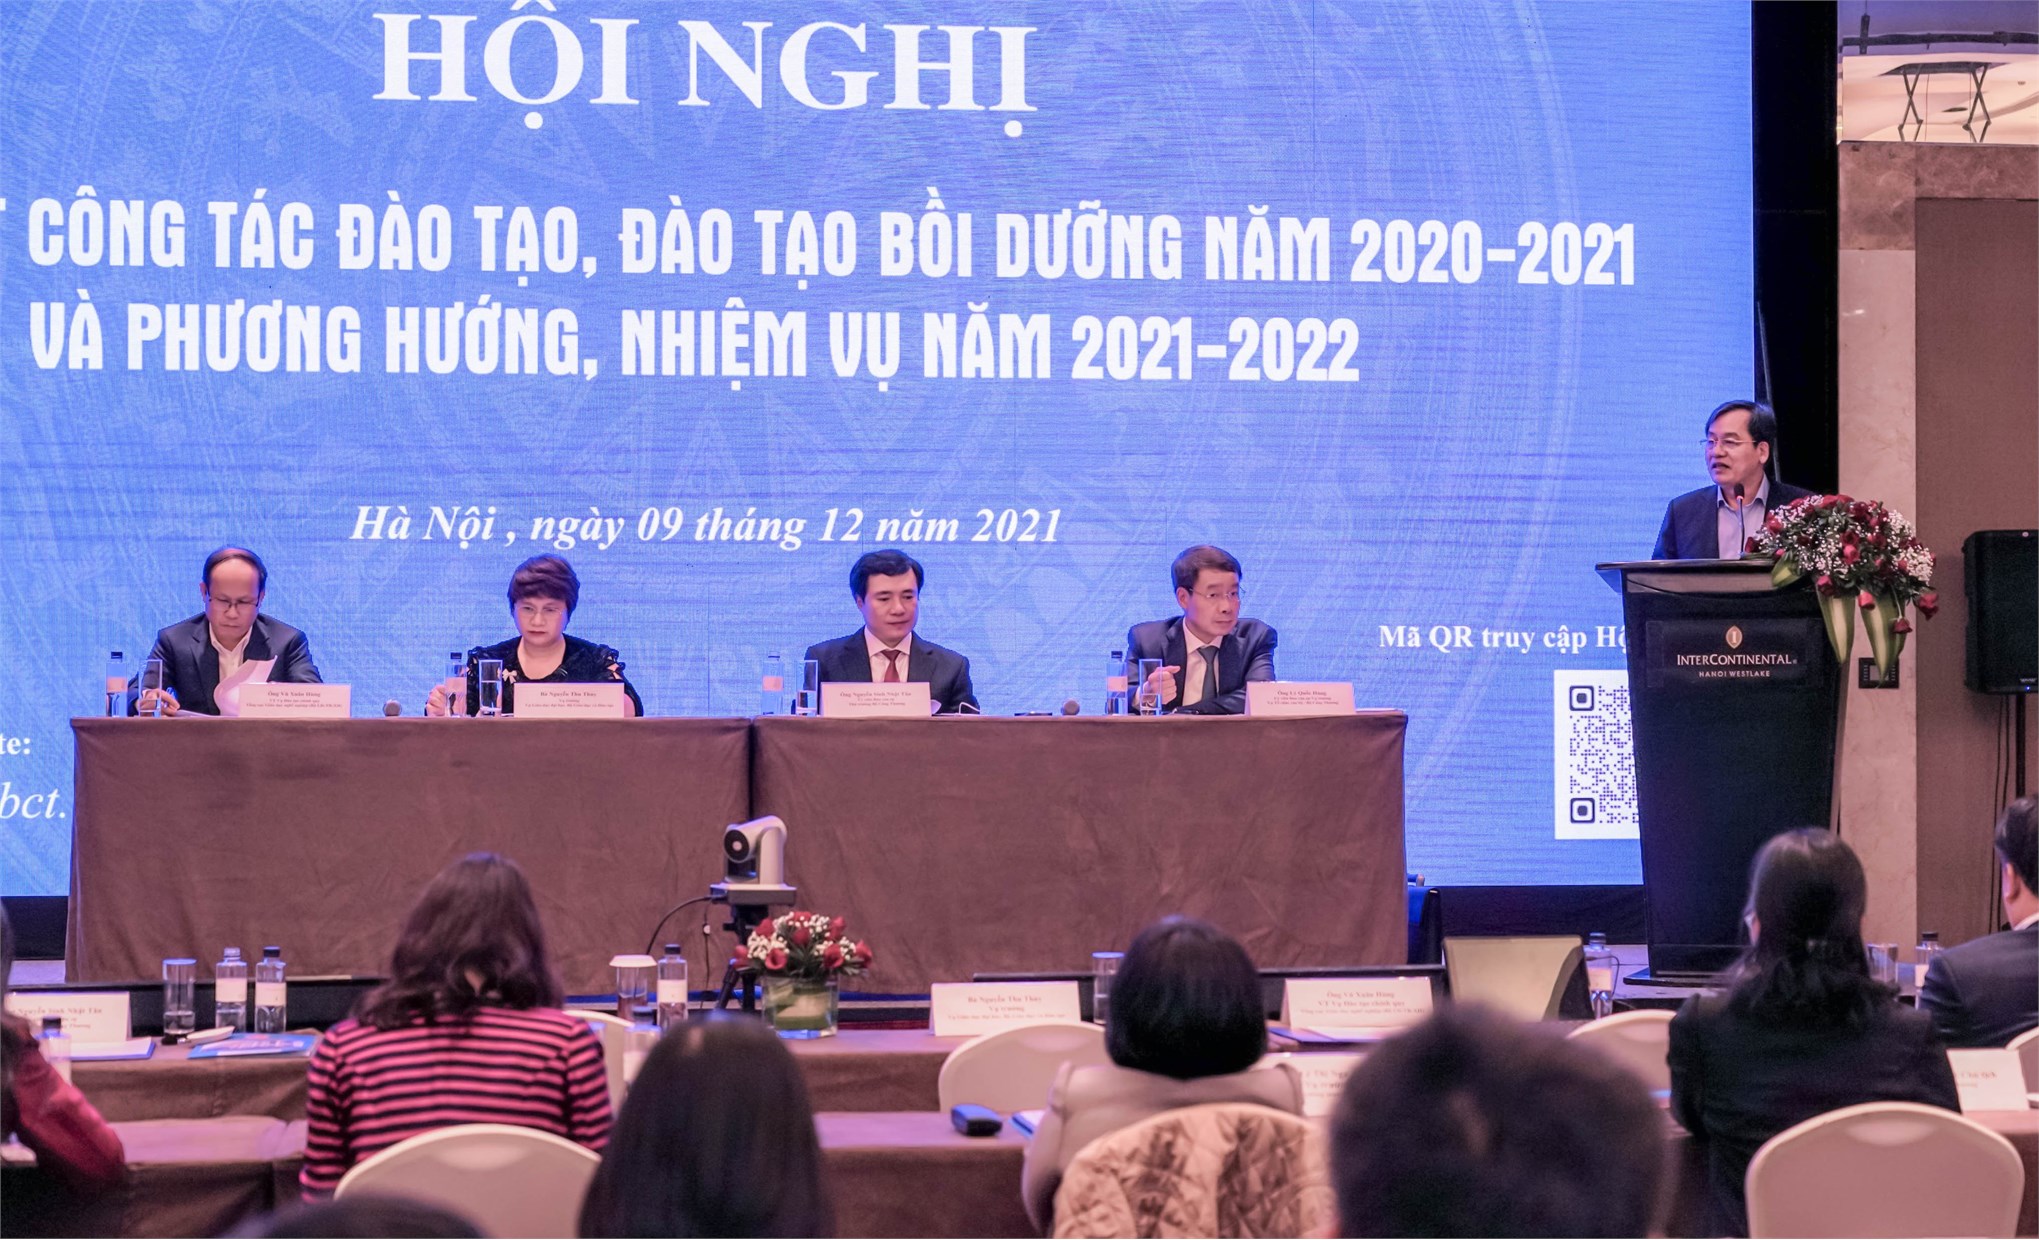 Đại học Công nghiệp Hà Nội nhận Cờ thi đua xuất sắc tại Hội nghị tổng kết công tác đào tạo năm học 2020 – 2021 của Bộ Công Thương